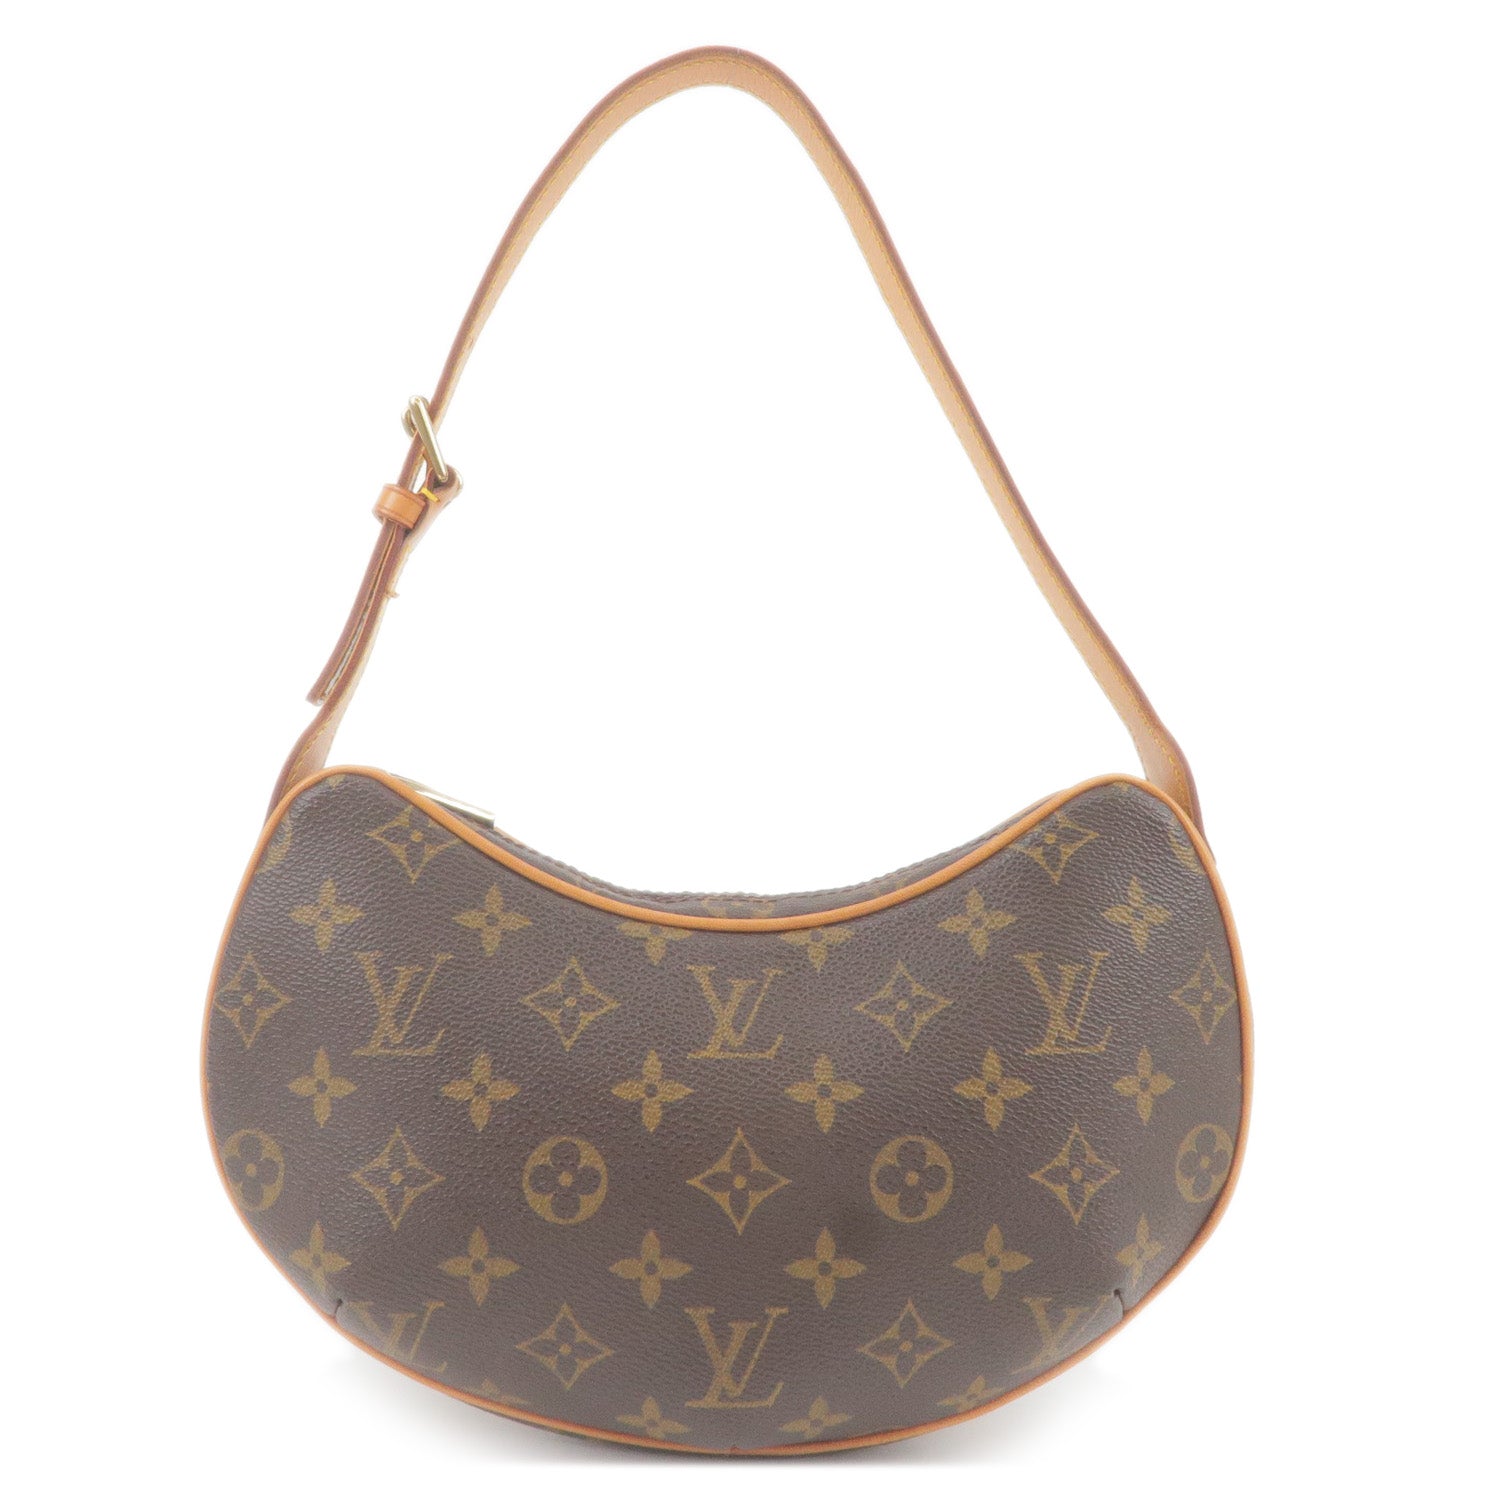 Louis Vuitton, Bags, Authentic Louis Vuitton Pochette Croissant Pm